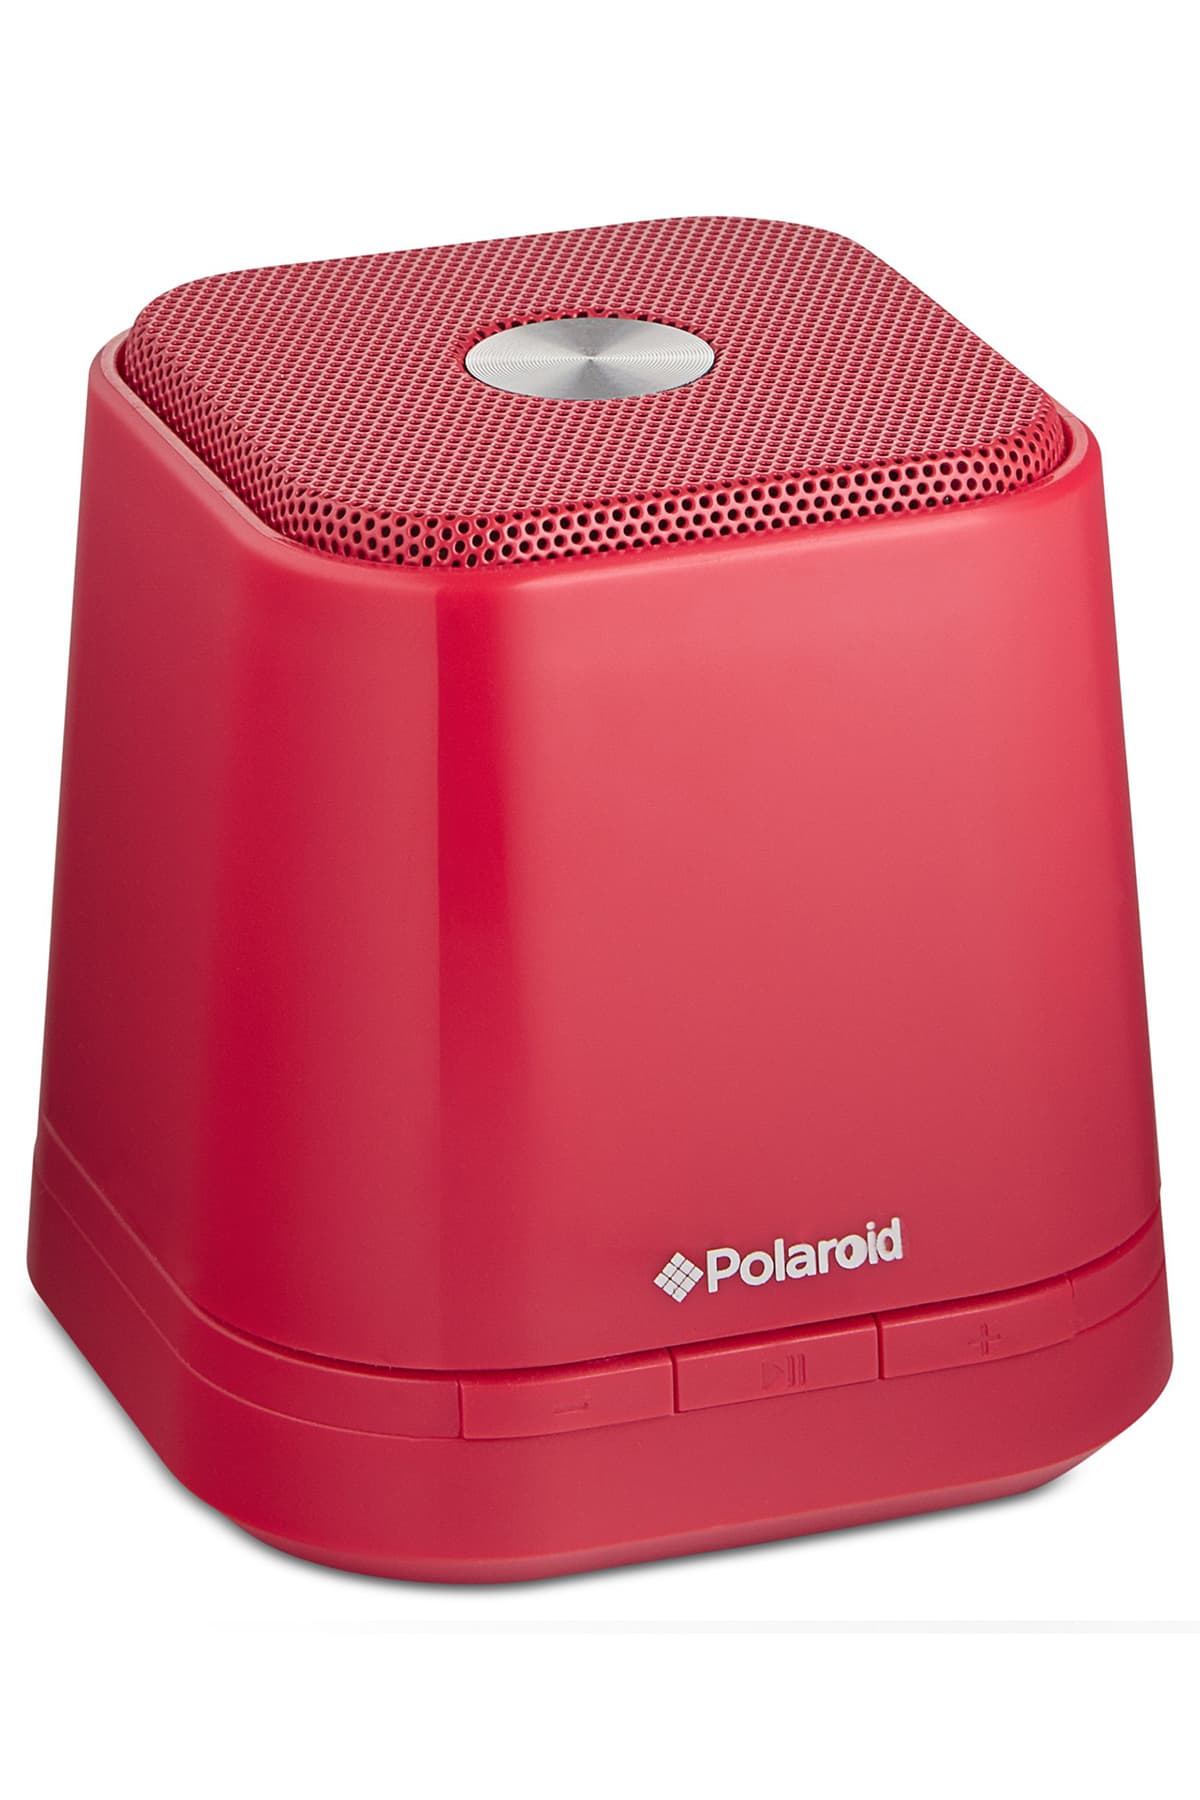 Polaroid Red Bluetooth Mini Speaker